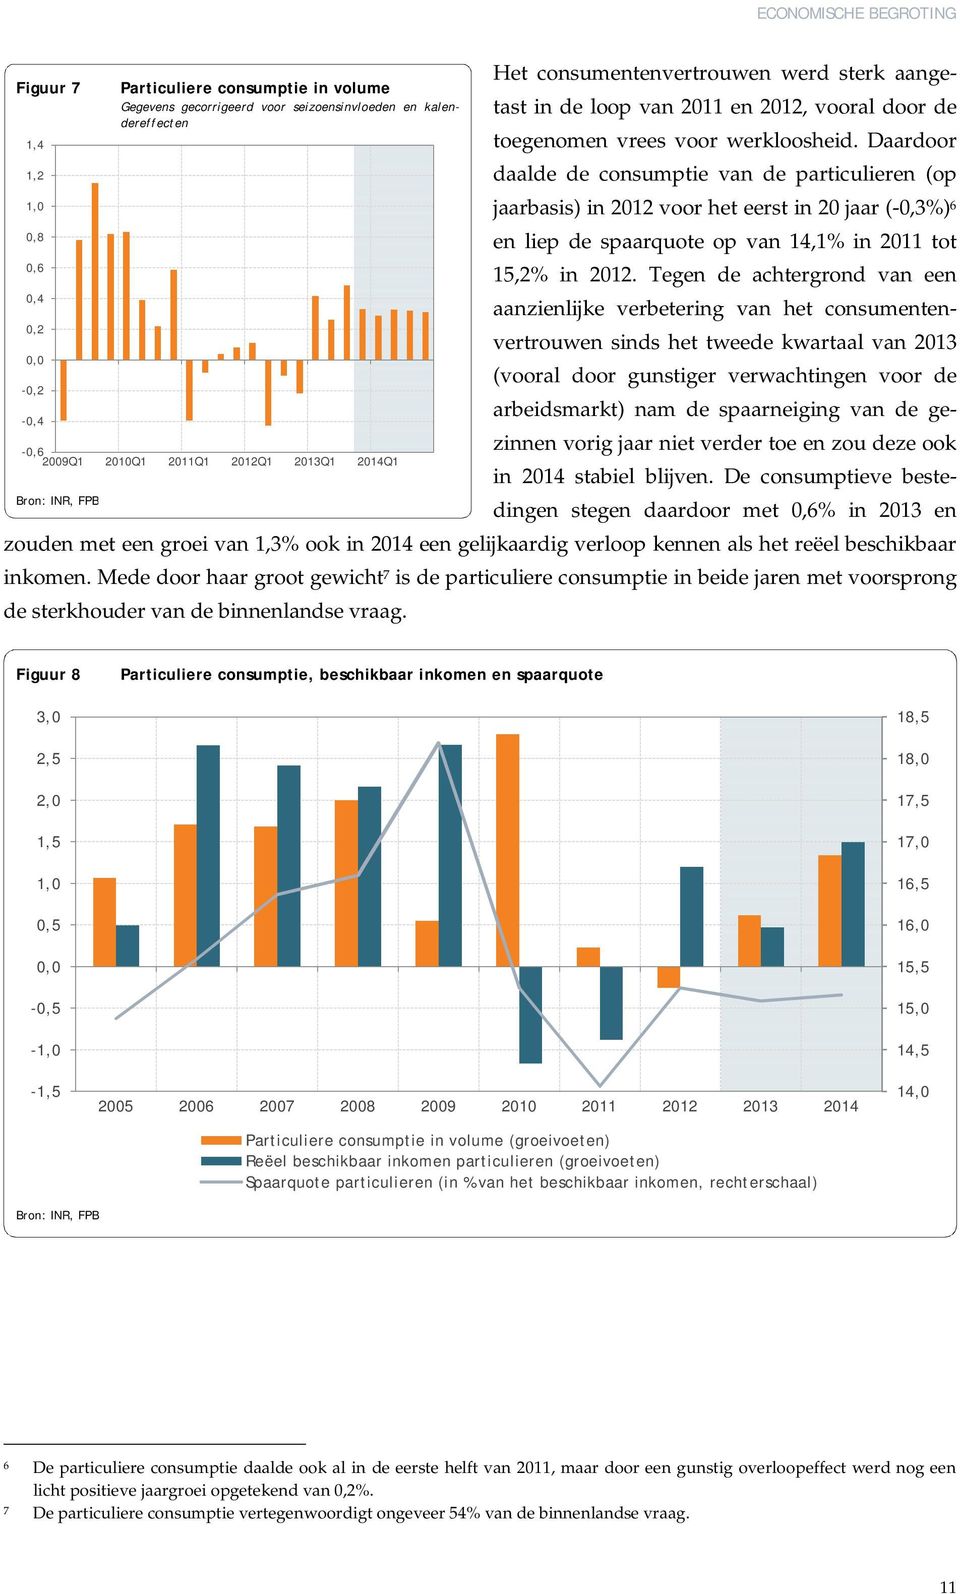 Daardoor daalde de consumptie van de particulieren (op jaarbasis) in 2012 voor het eerst in 20 jaar (-0,3%) 6 en liep de spaarquote op van 14,1% in 2011 tot 15,2% in 2012.